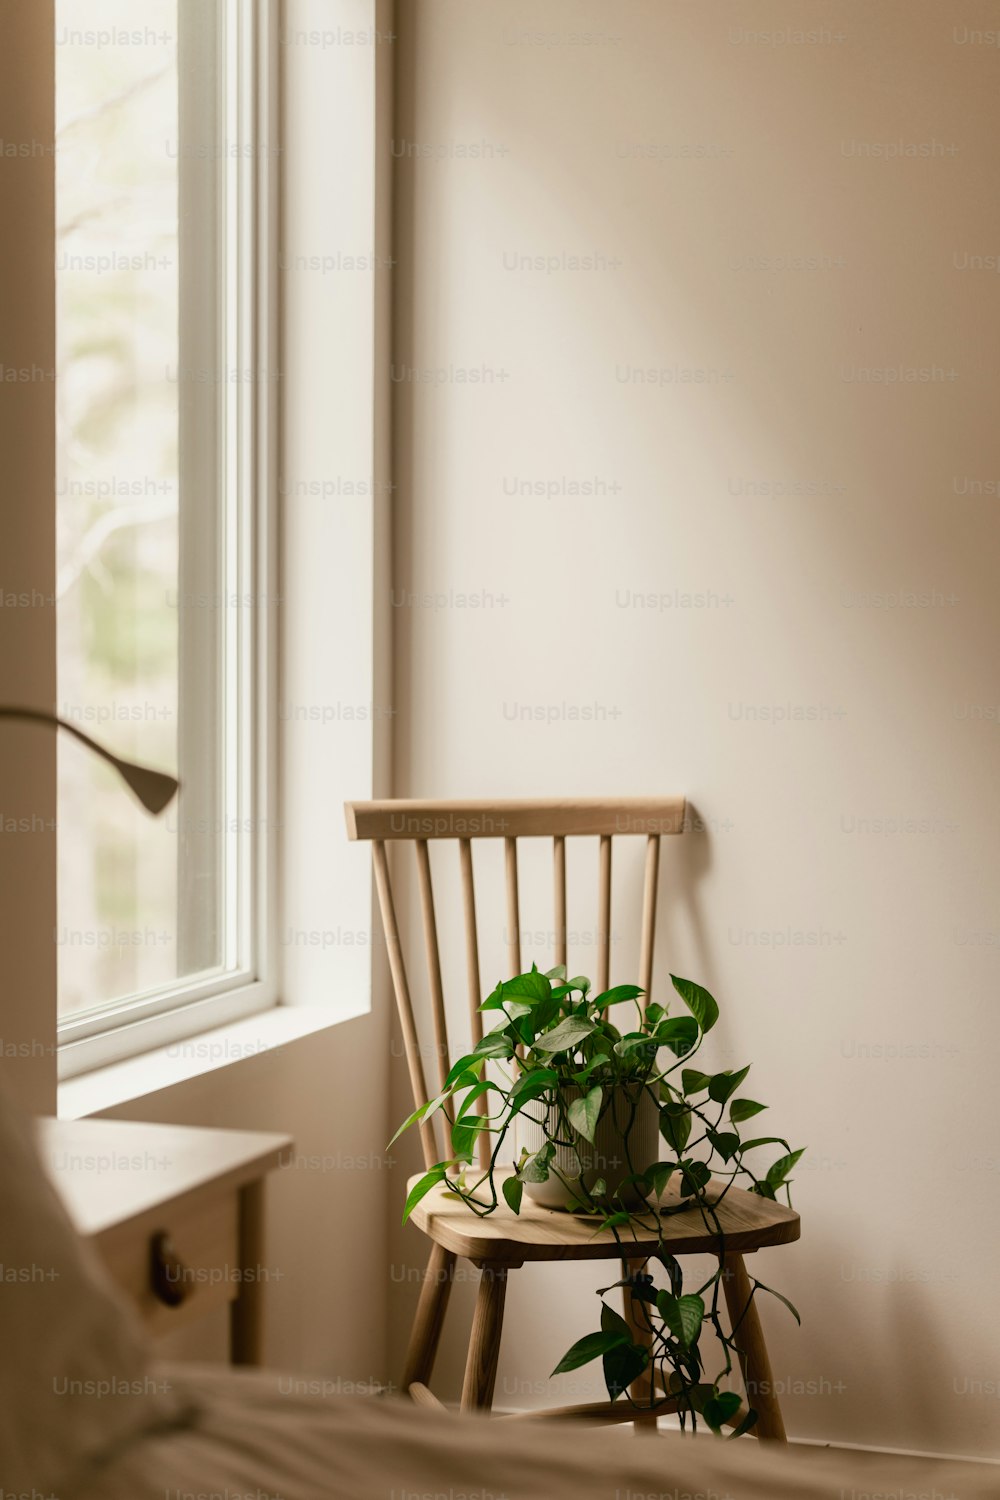 una sedia con una pianta in vaso seduta sopra di essa